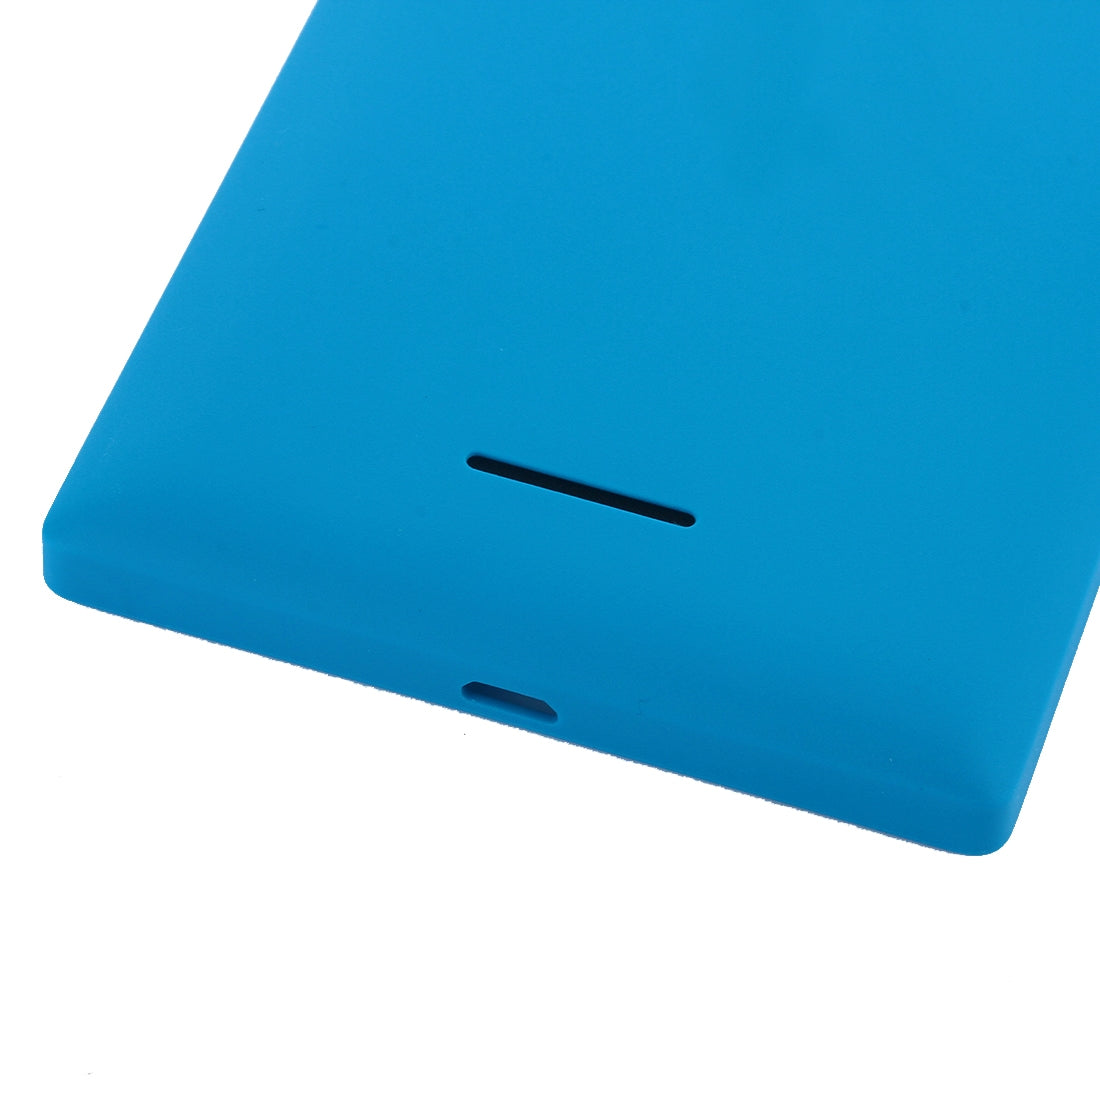 Tapa Bateria Back Cover Nokia XL Azul